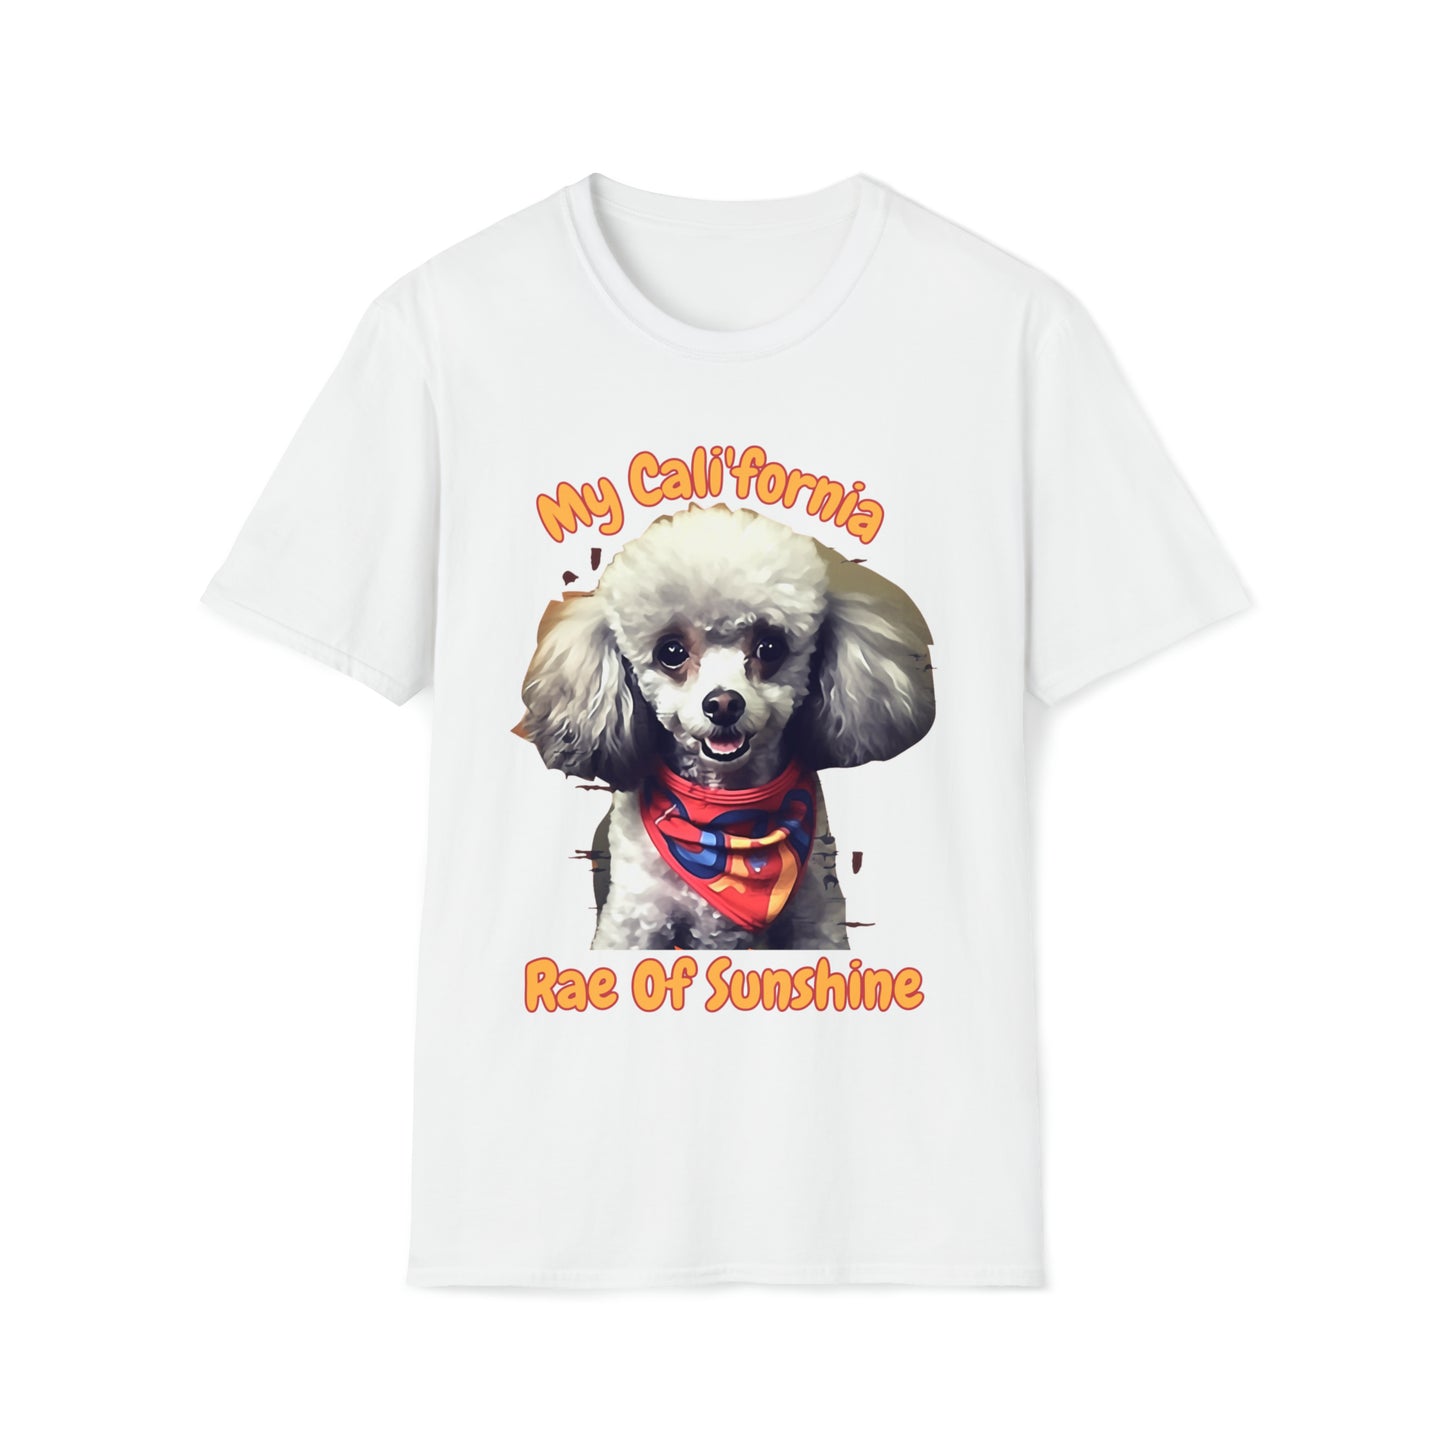 "Cali'fornia Rae of Sunshine" Dog Unisex Softstyle T-Shirt